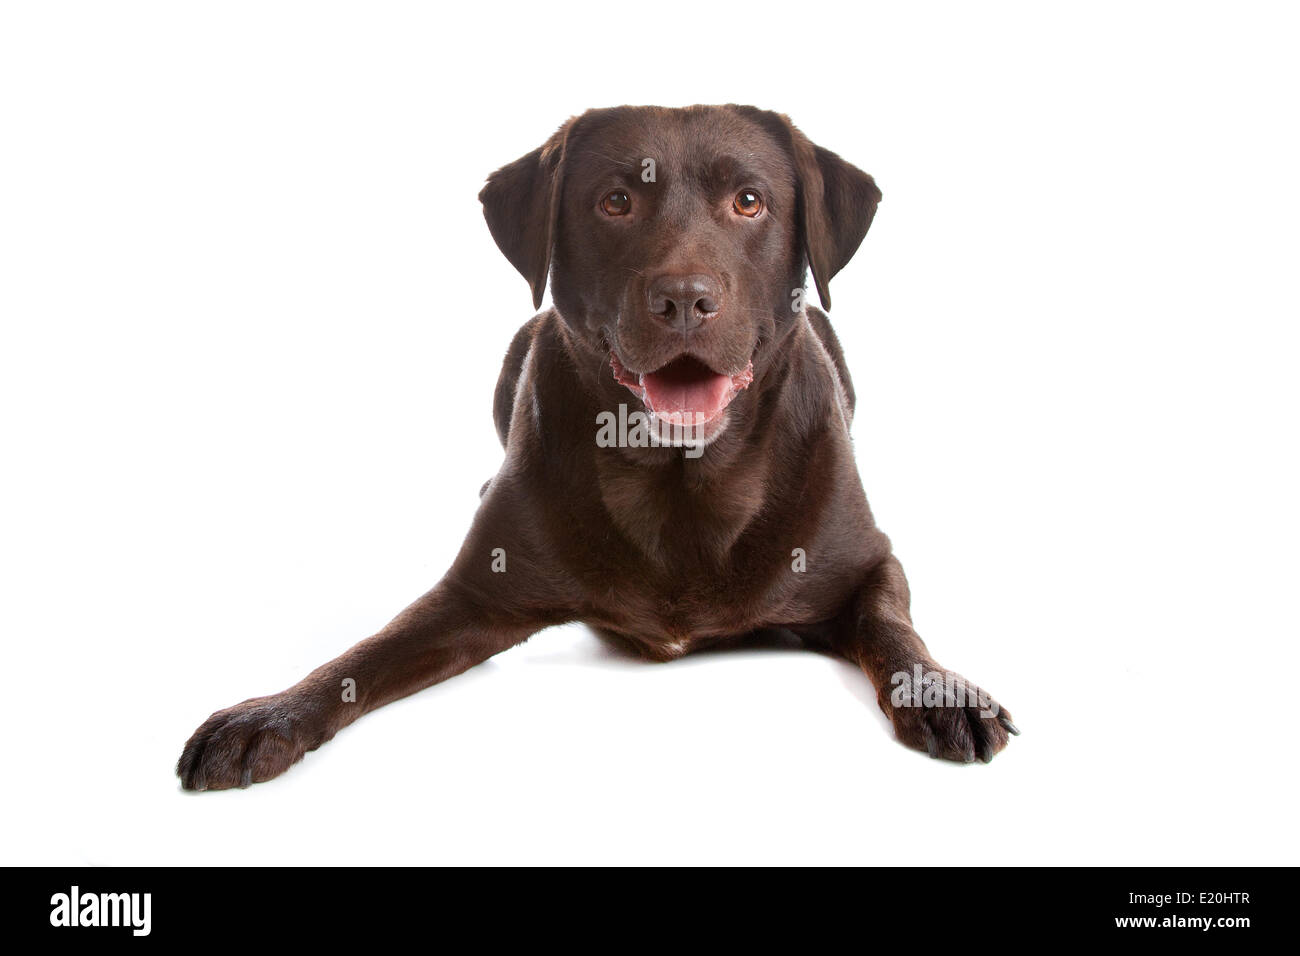 Chocolate Labrador retriever dog Stock Photo